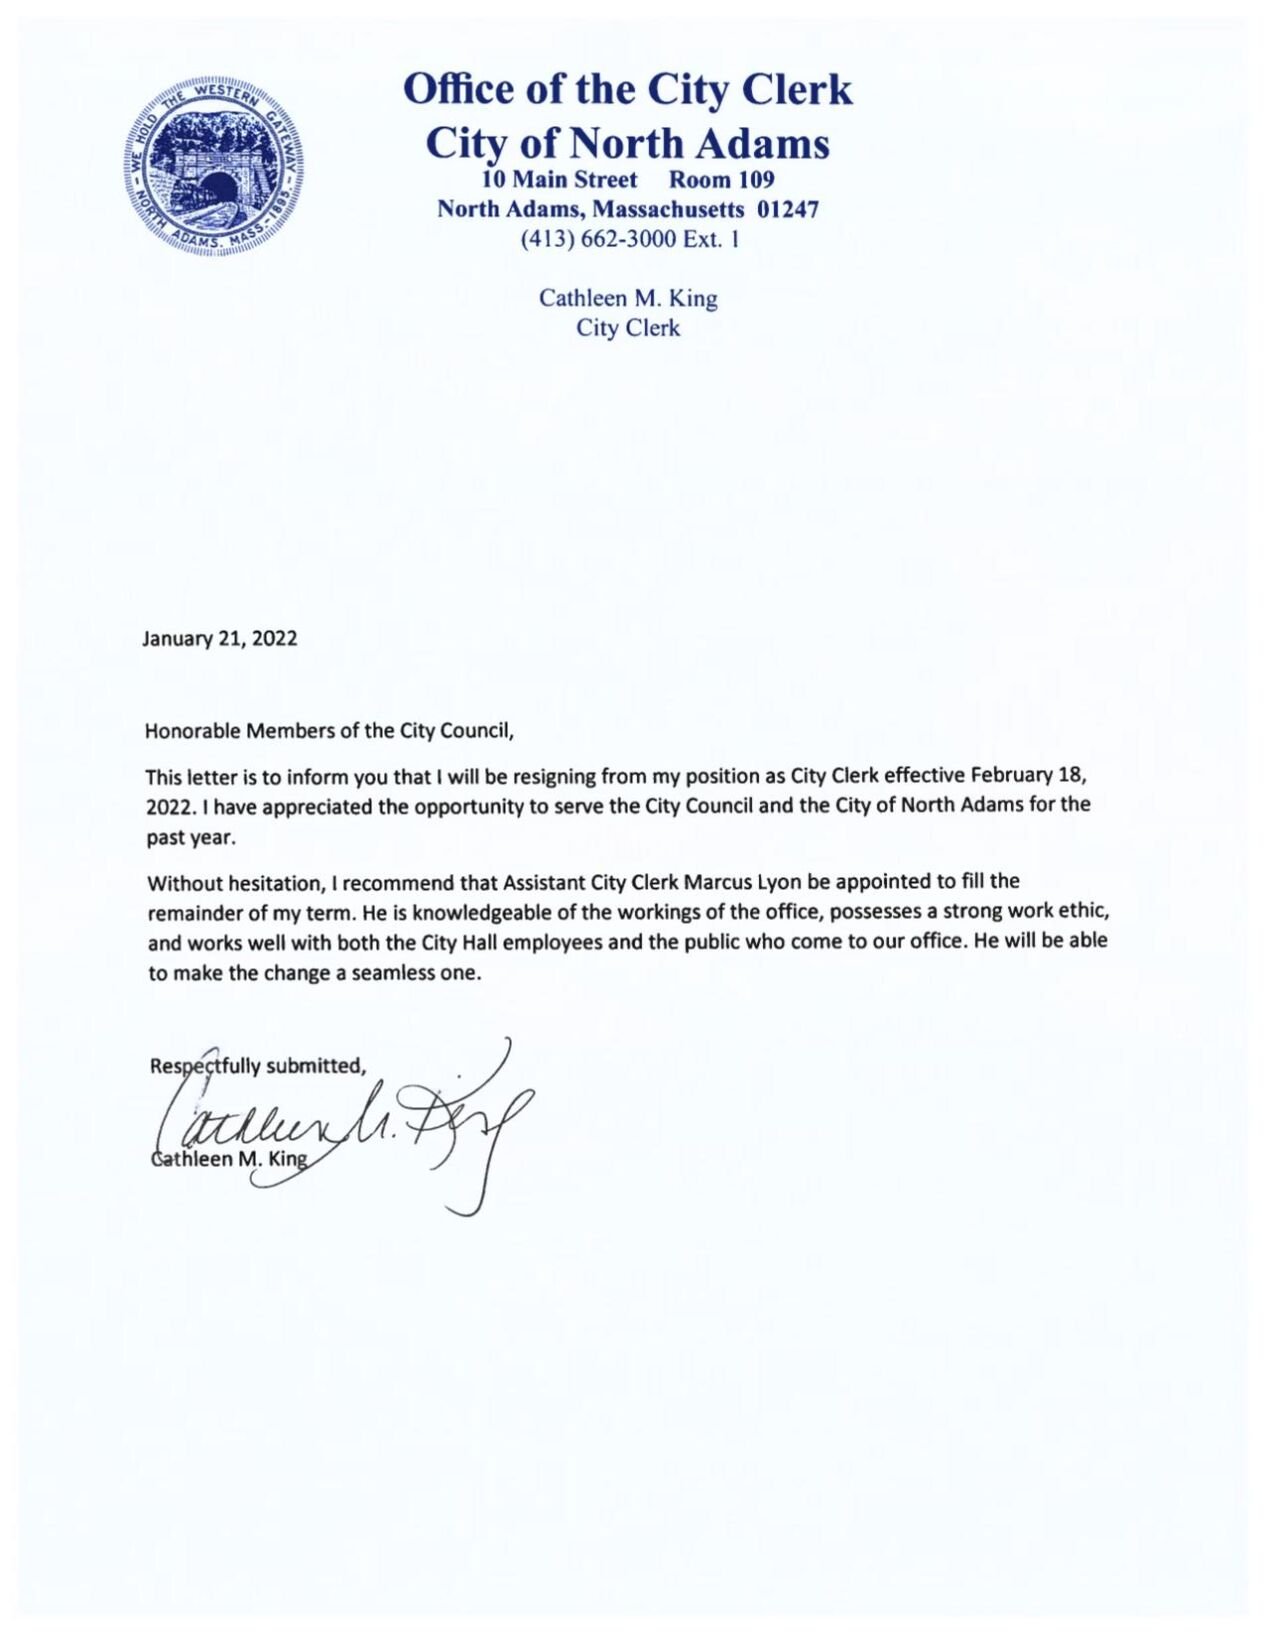 City Clerk Cathleen Kings resignation letter